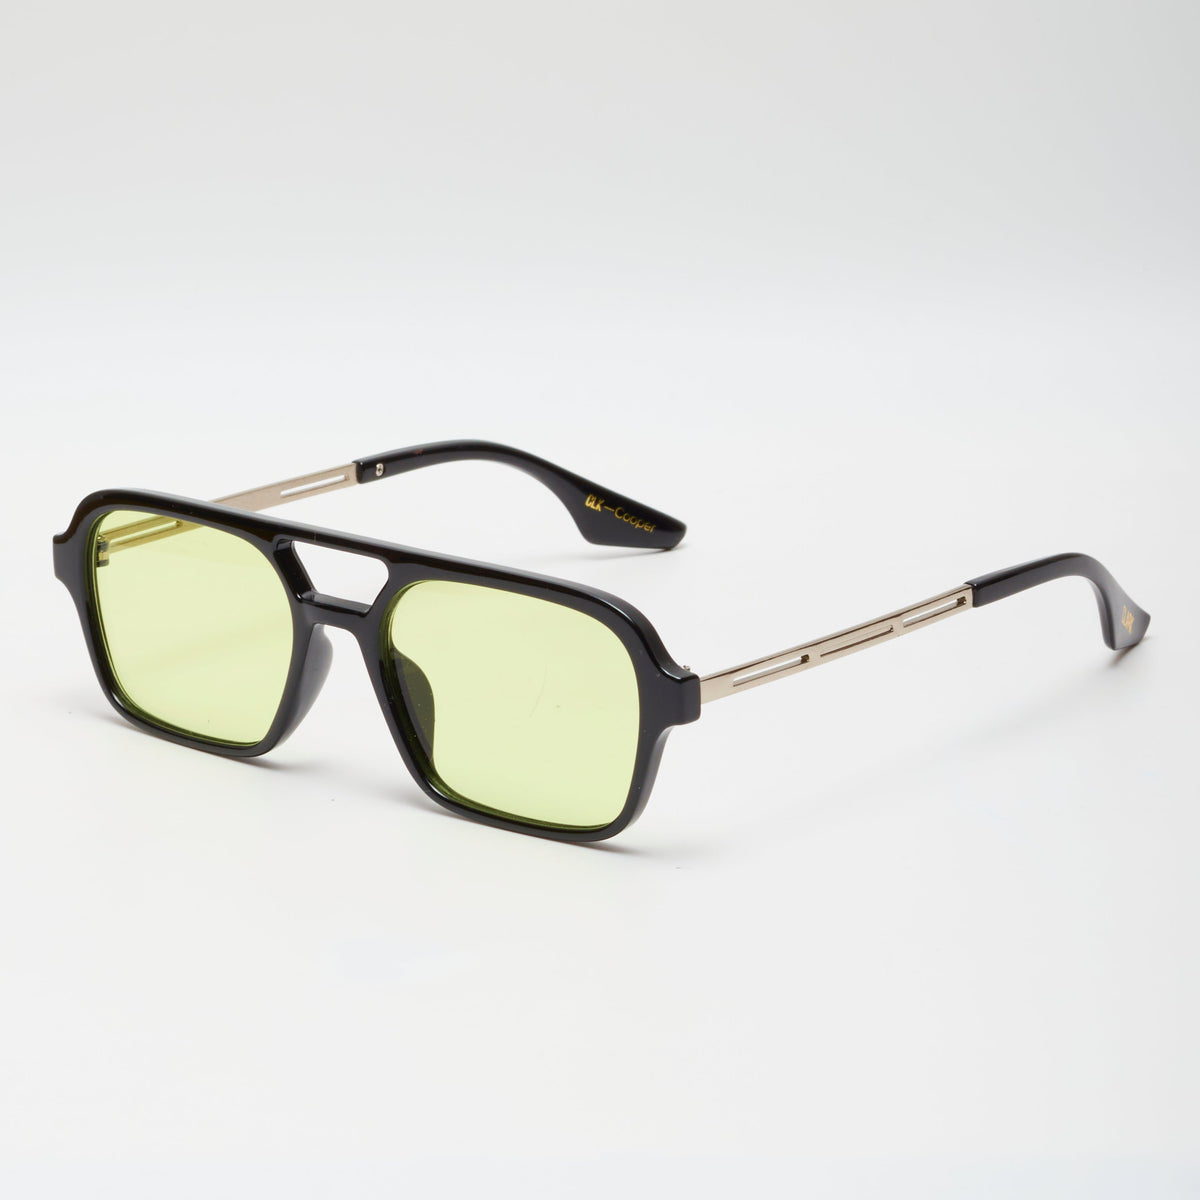 Lentes de sol/gafas-Aviador/clasicas-marco transparente/lente  rosado-Proteccion UV 400- hombre/mujer- CLARK-COOPER SUNGLASSES